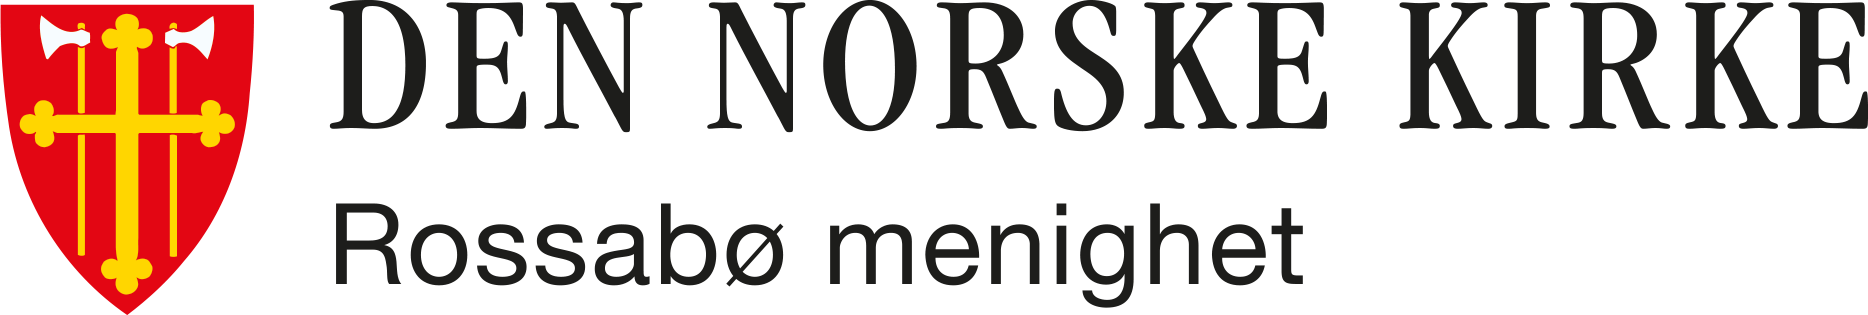 Rossabø menighet logo